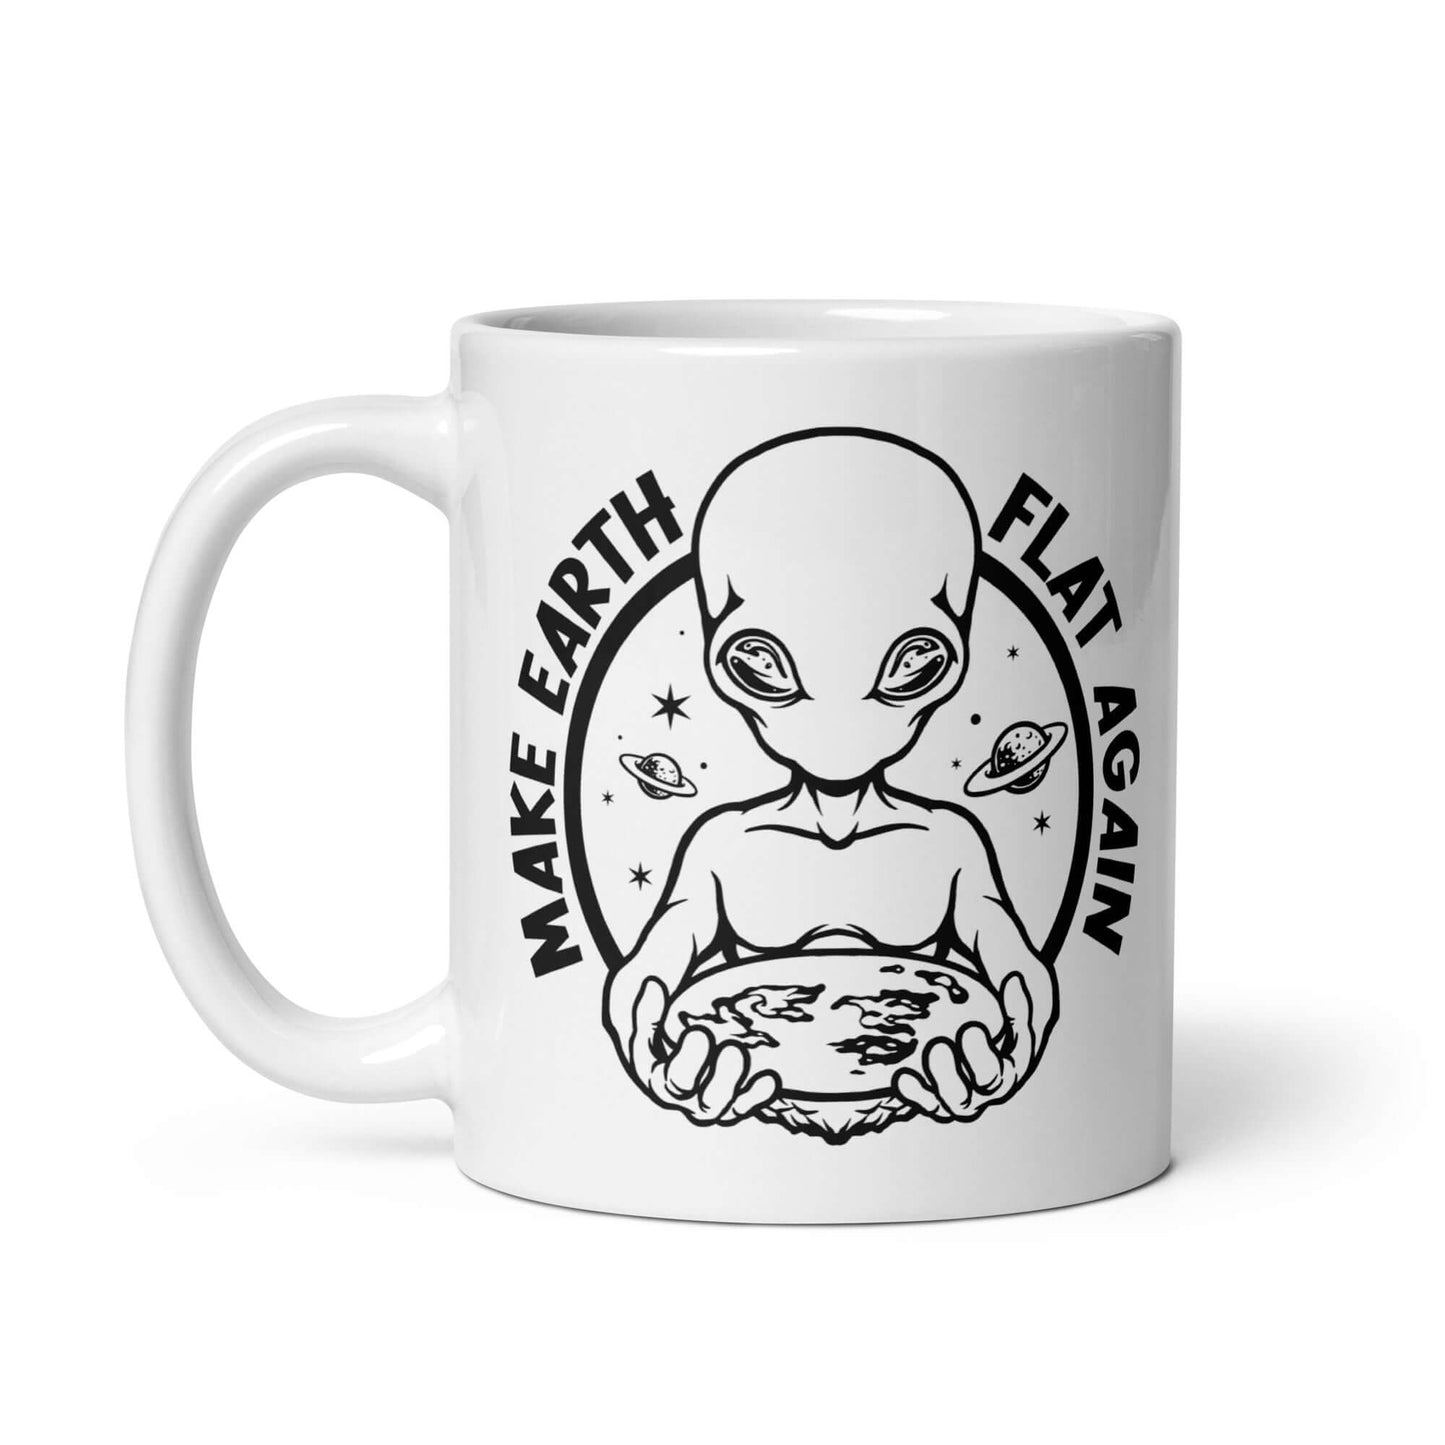 Make Earth flat again mug